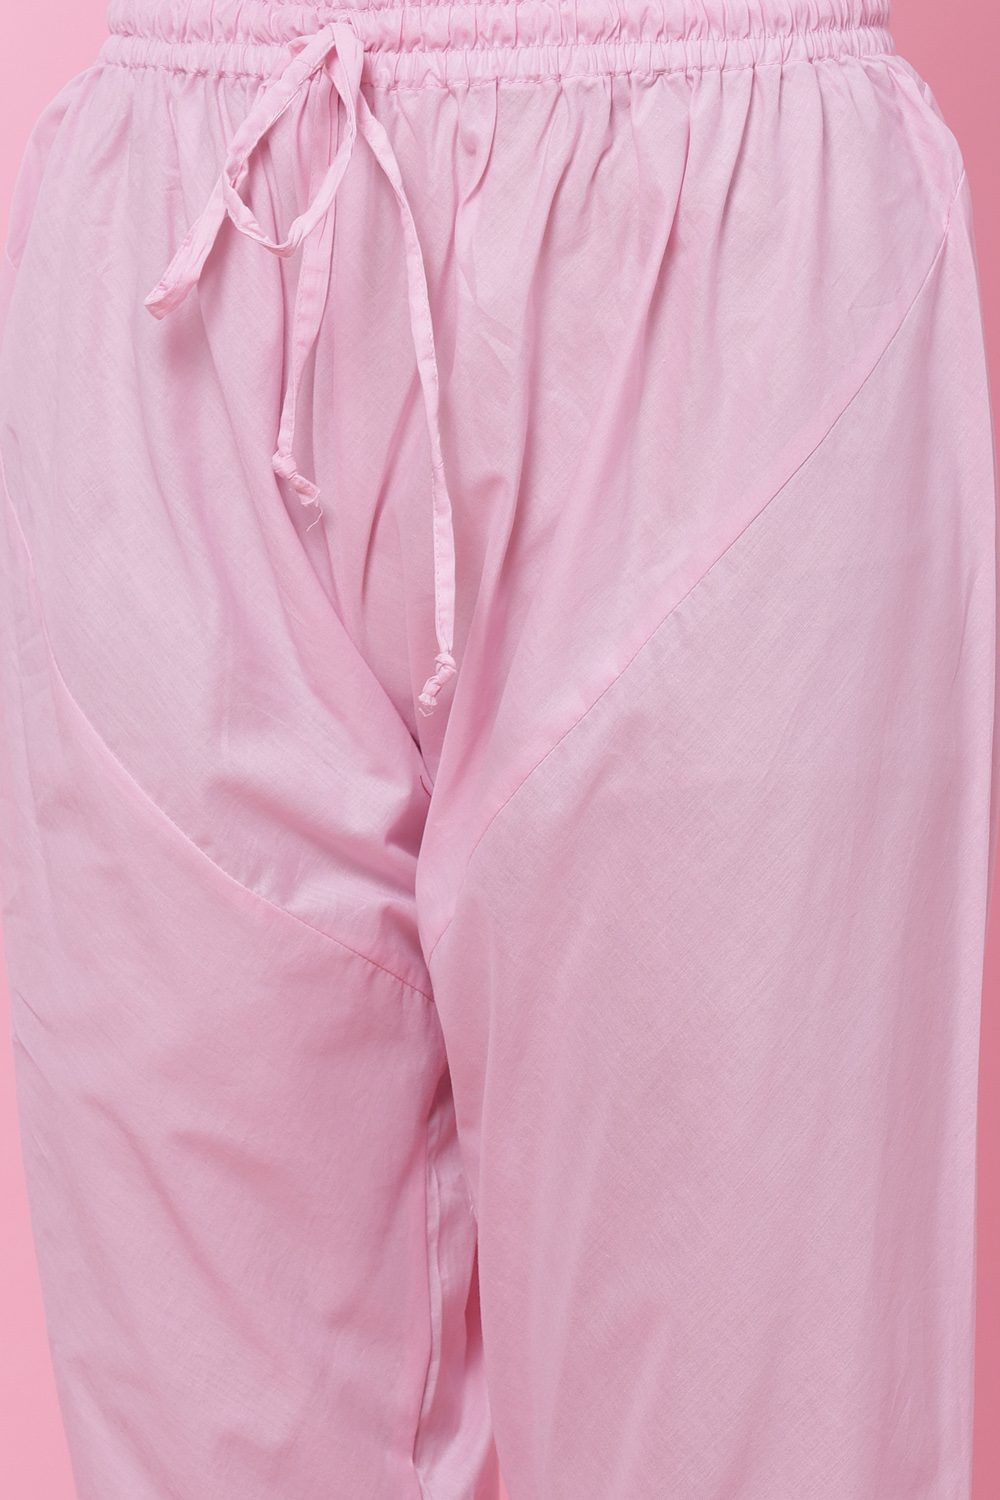 Relaxing Cotton Self Pink Design Churidar Pants #32017